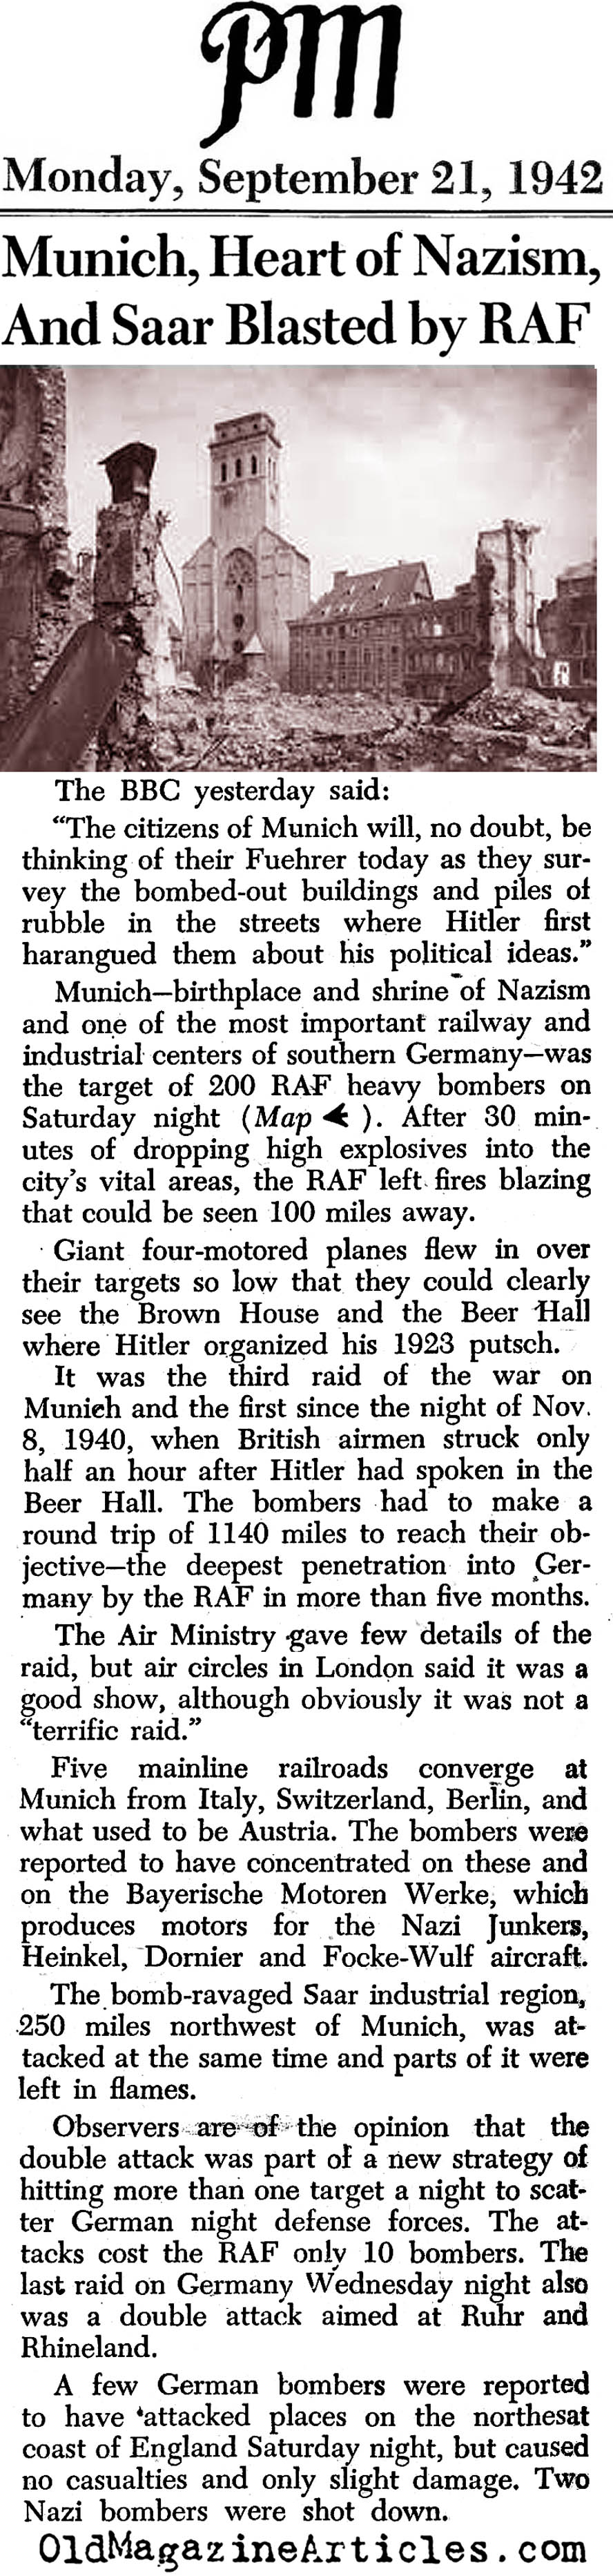 RAF Bombs Munich (PM Tabloid, 1942)